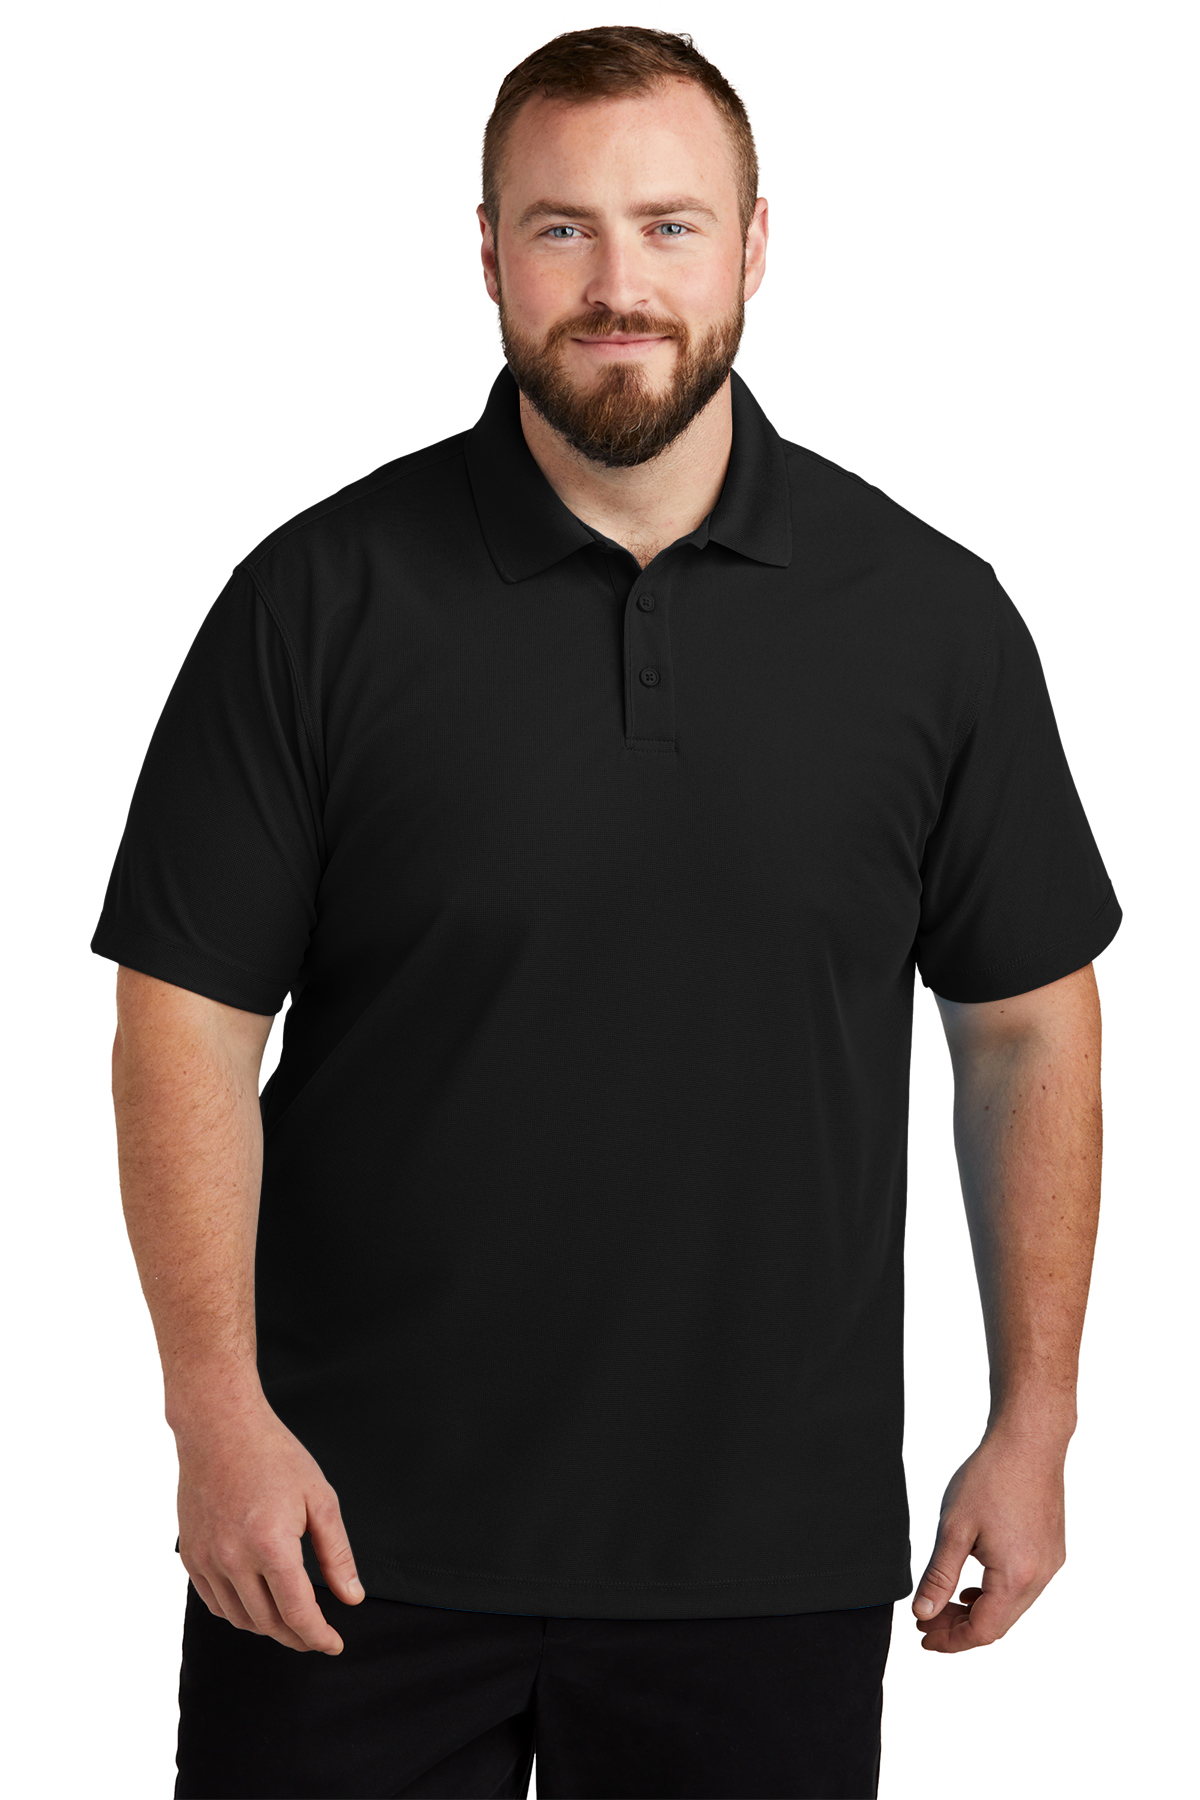 Guru Dry-Kore Polo Shirt - Black / All Sizes / Clothing / Fishing